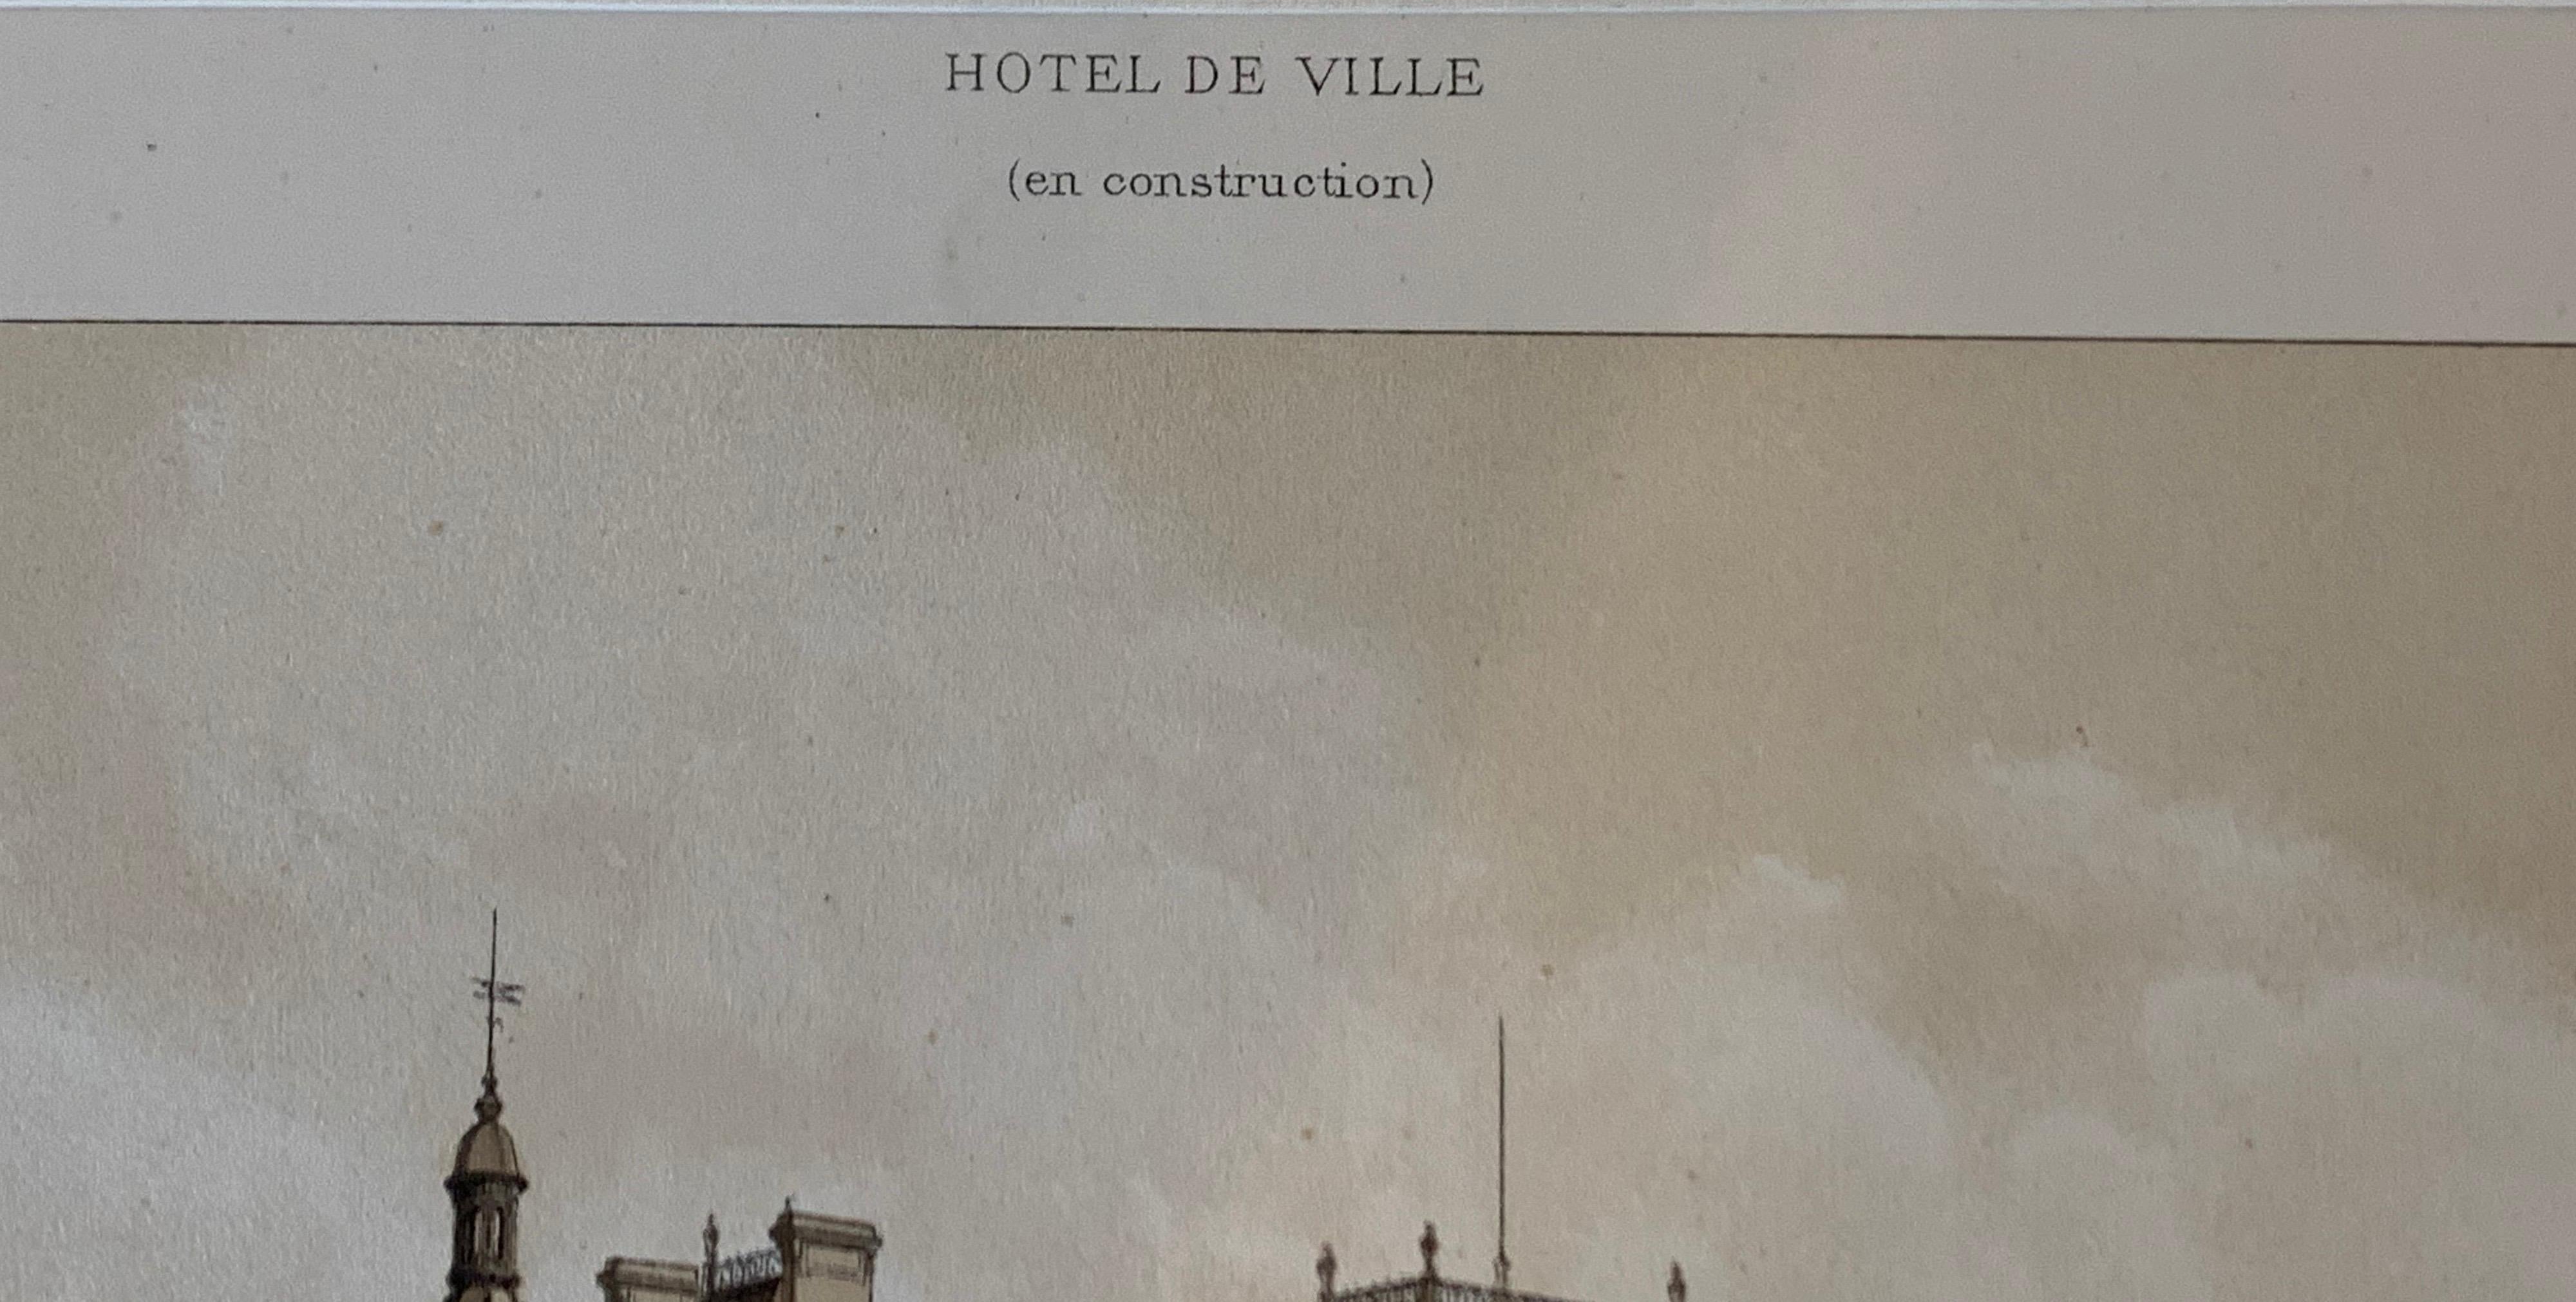 French Hotel De Ville Paris en Construction Charpentier Paper Lithograph 1870s Print